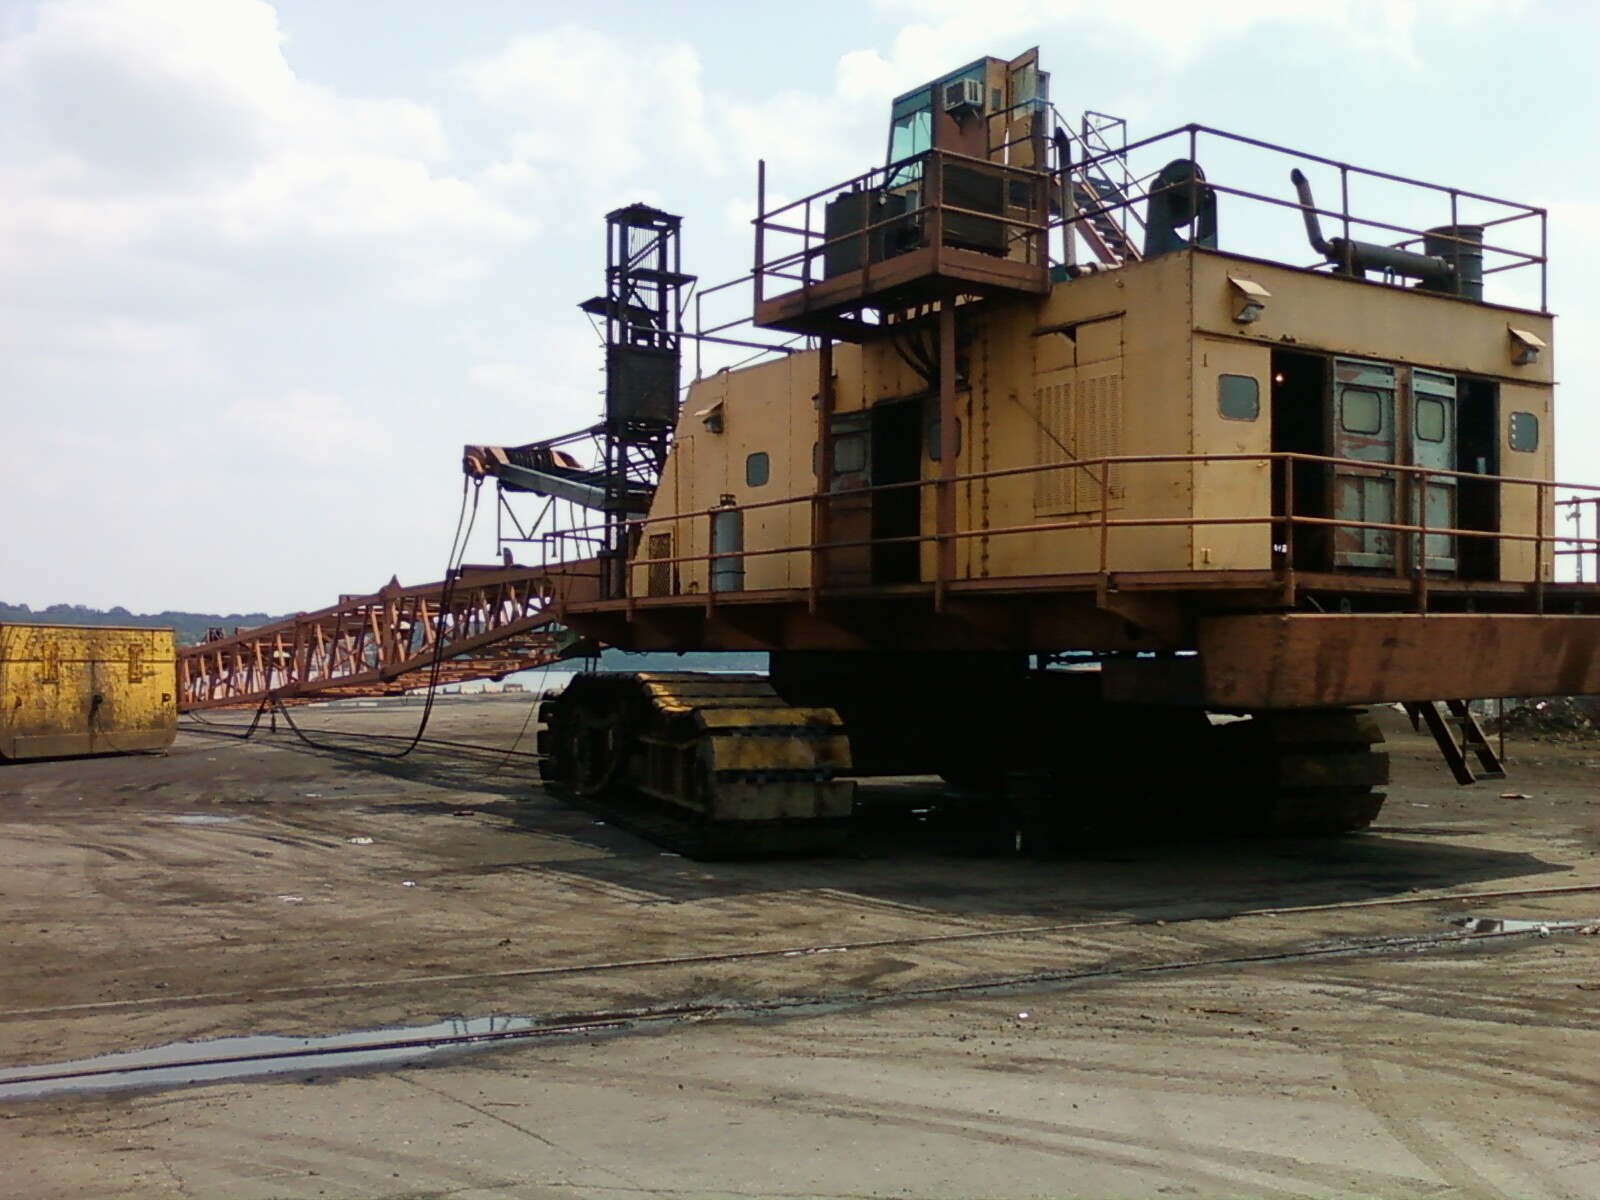 Johnson, RI - Metal Recycling's 70 ton scrapyard crane